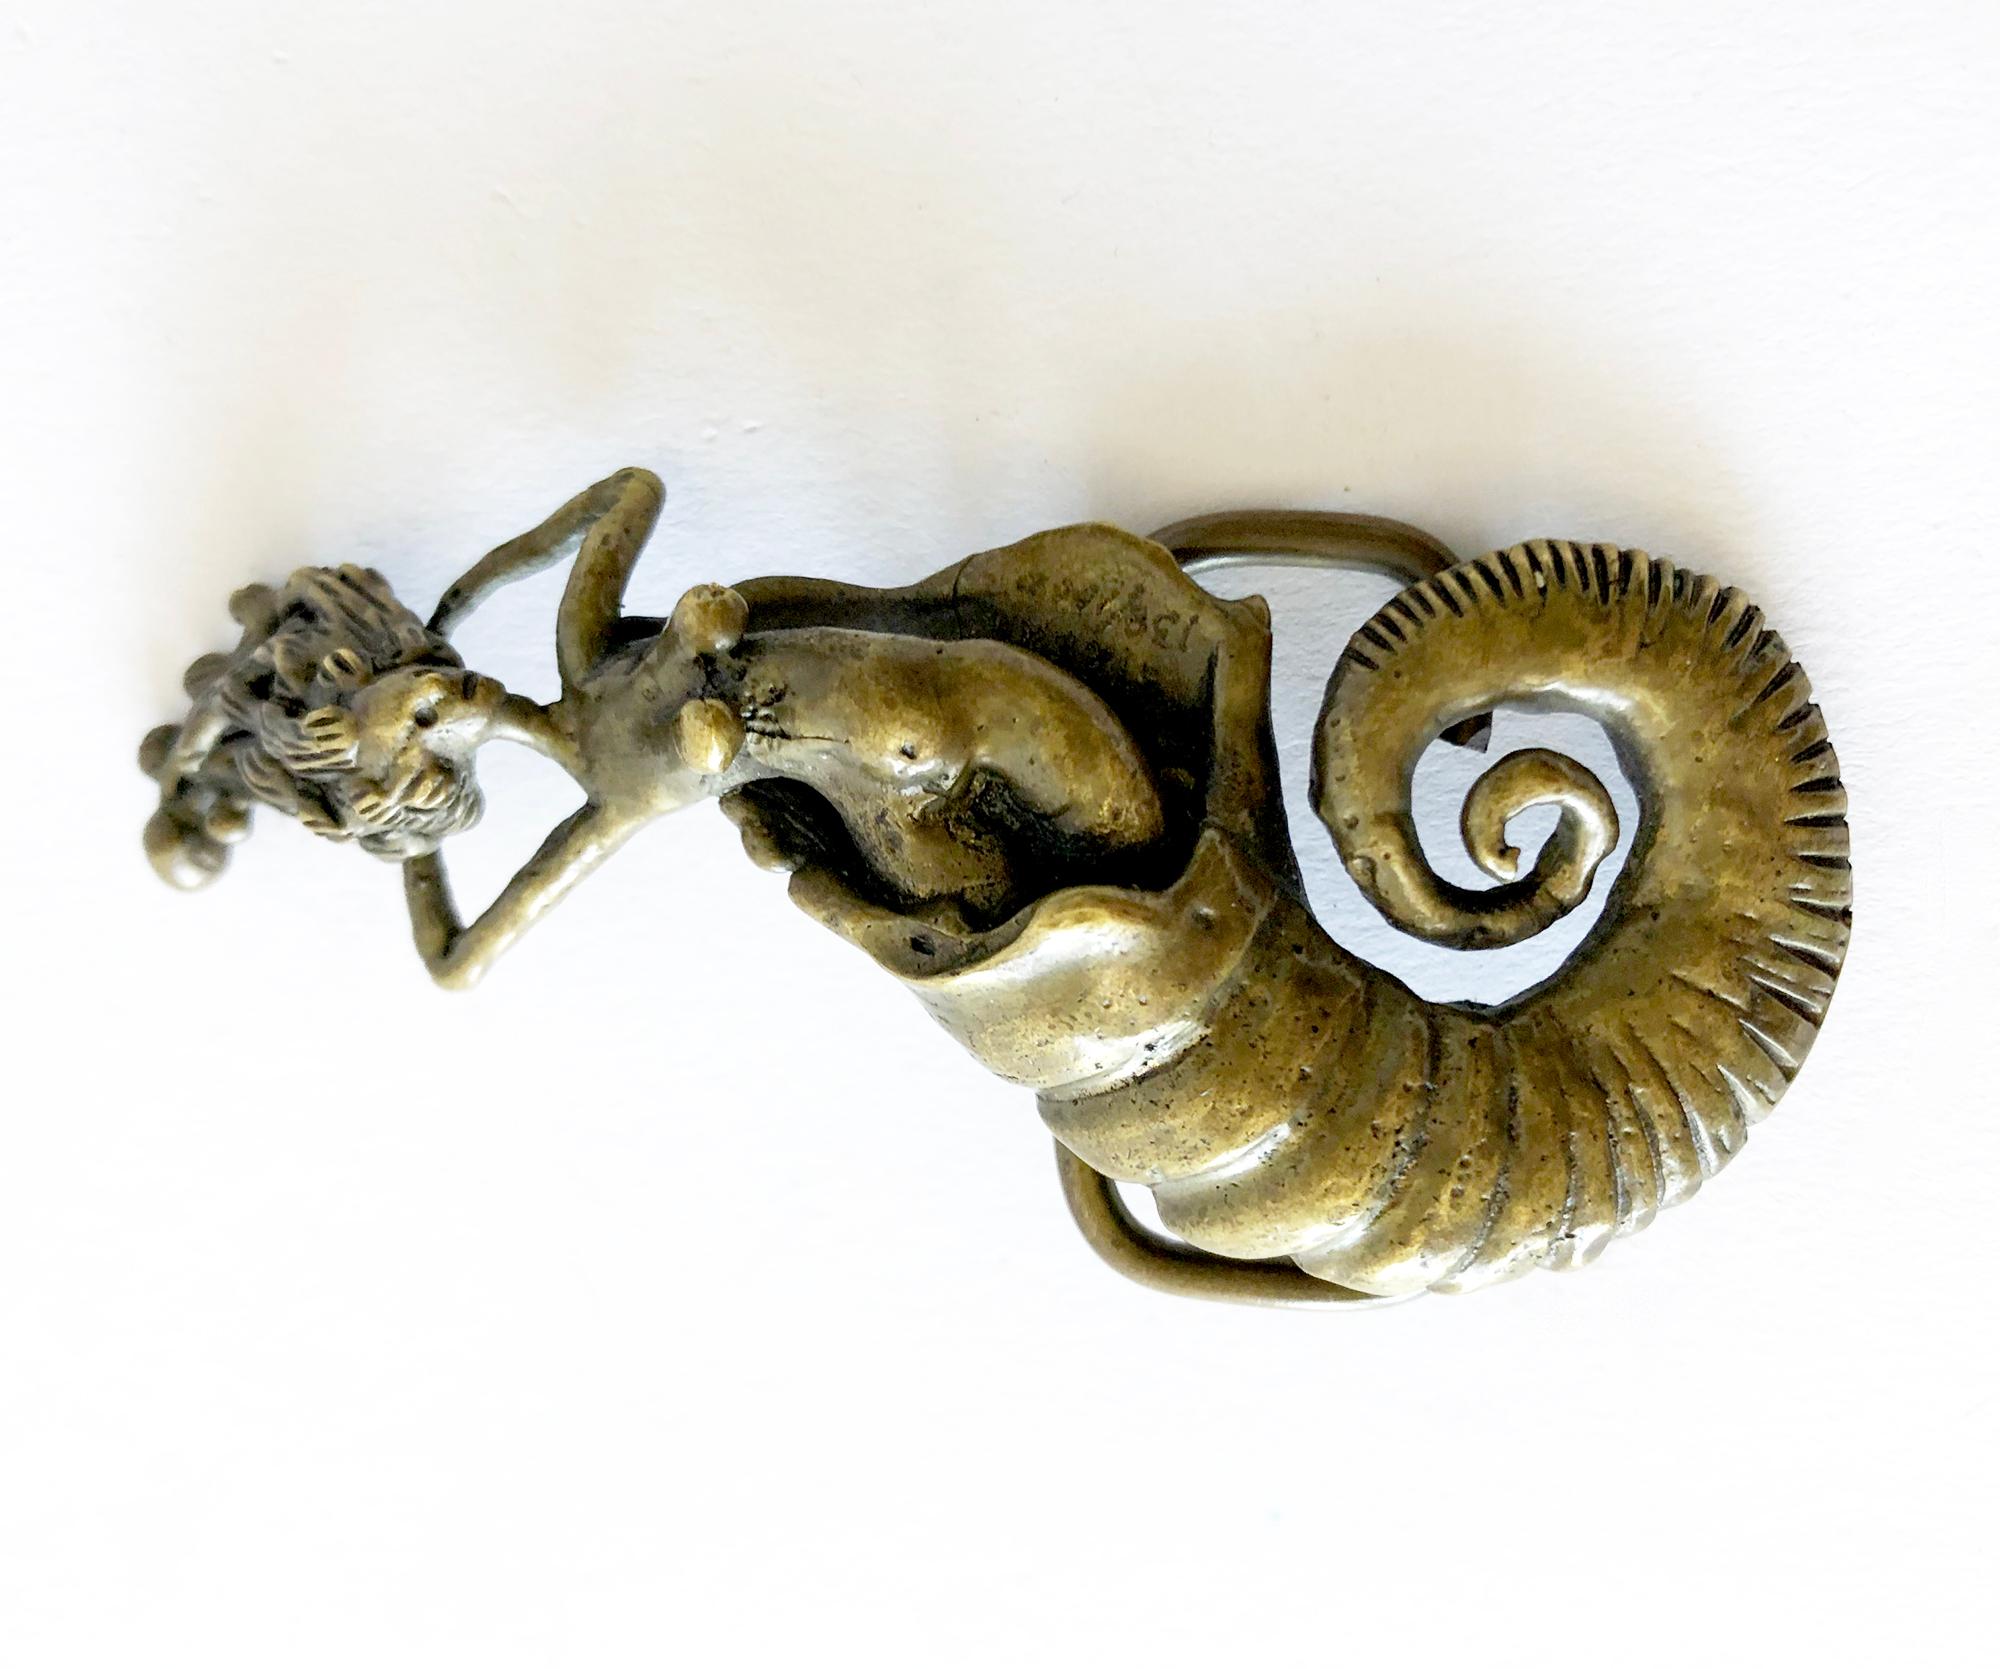 Boucle de ceinture en bronze en forme de sirène et de conque, créée par Carl Tasha, vers les années 1970.  La boucle mesure 3,5